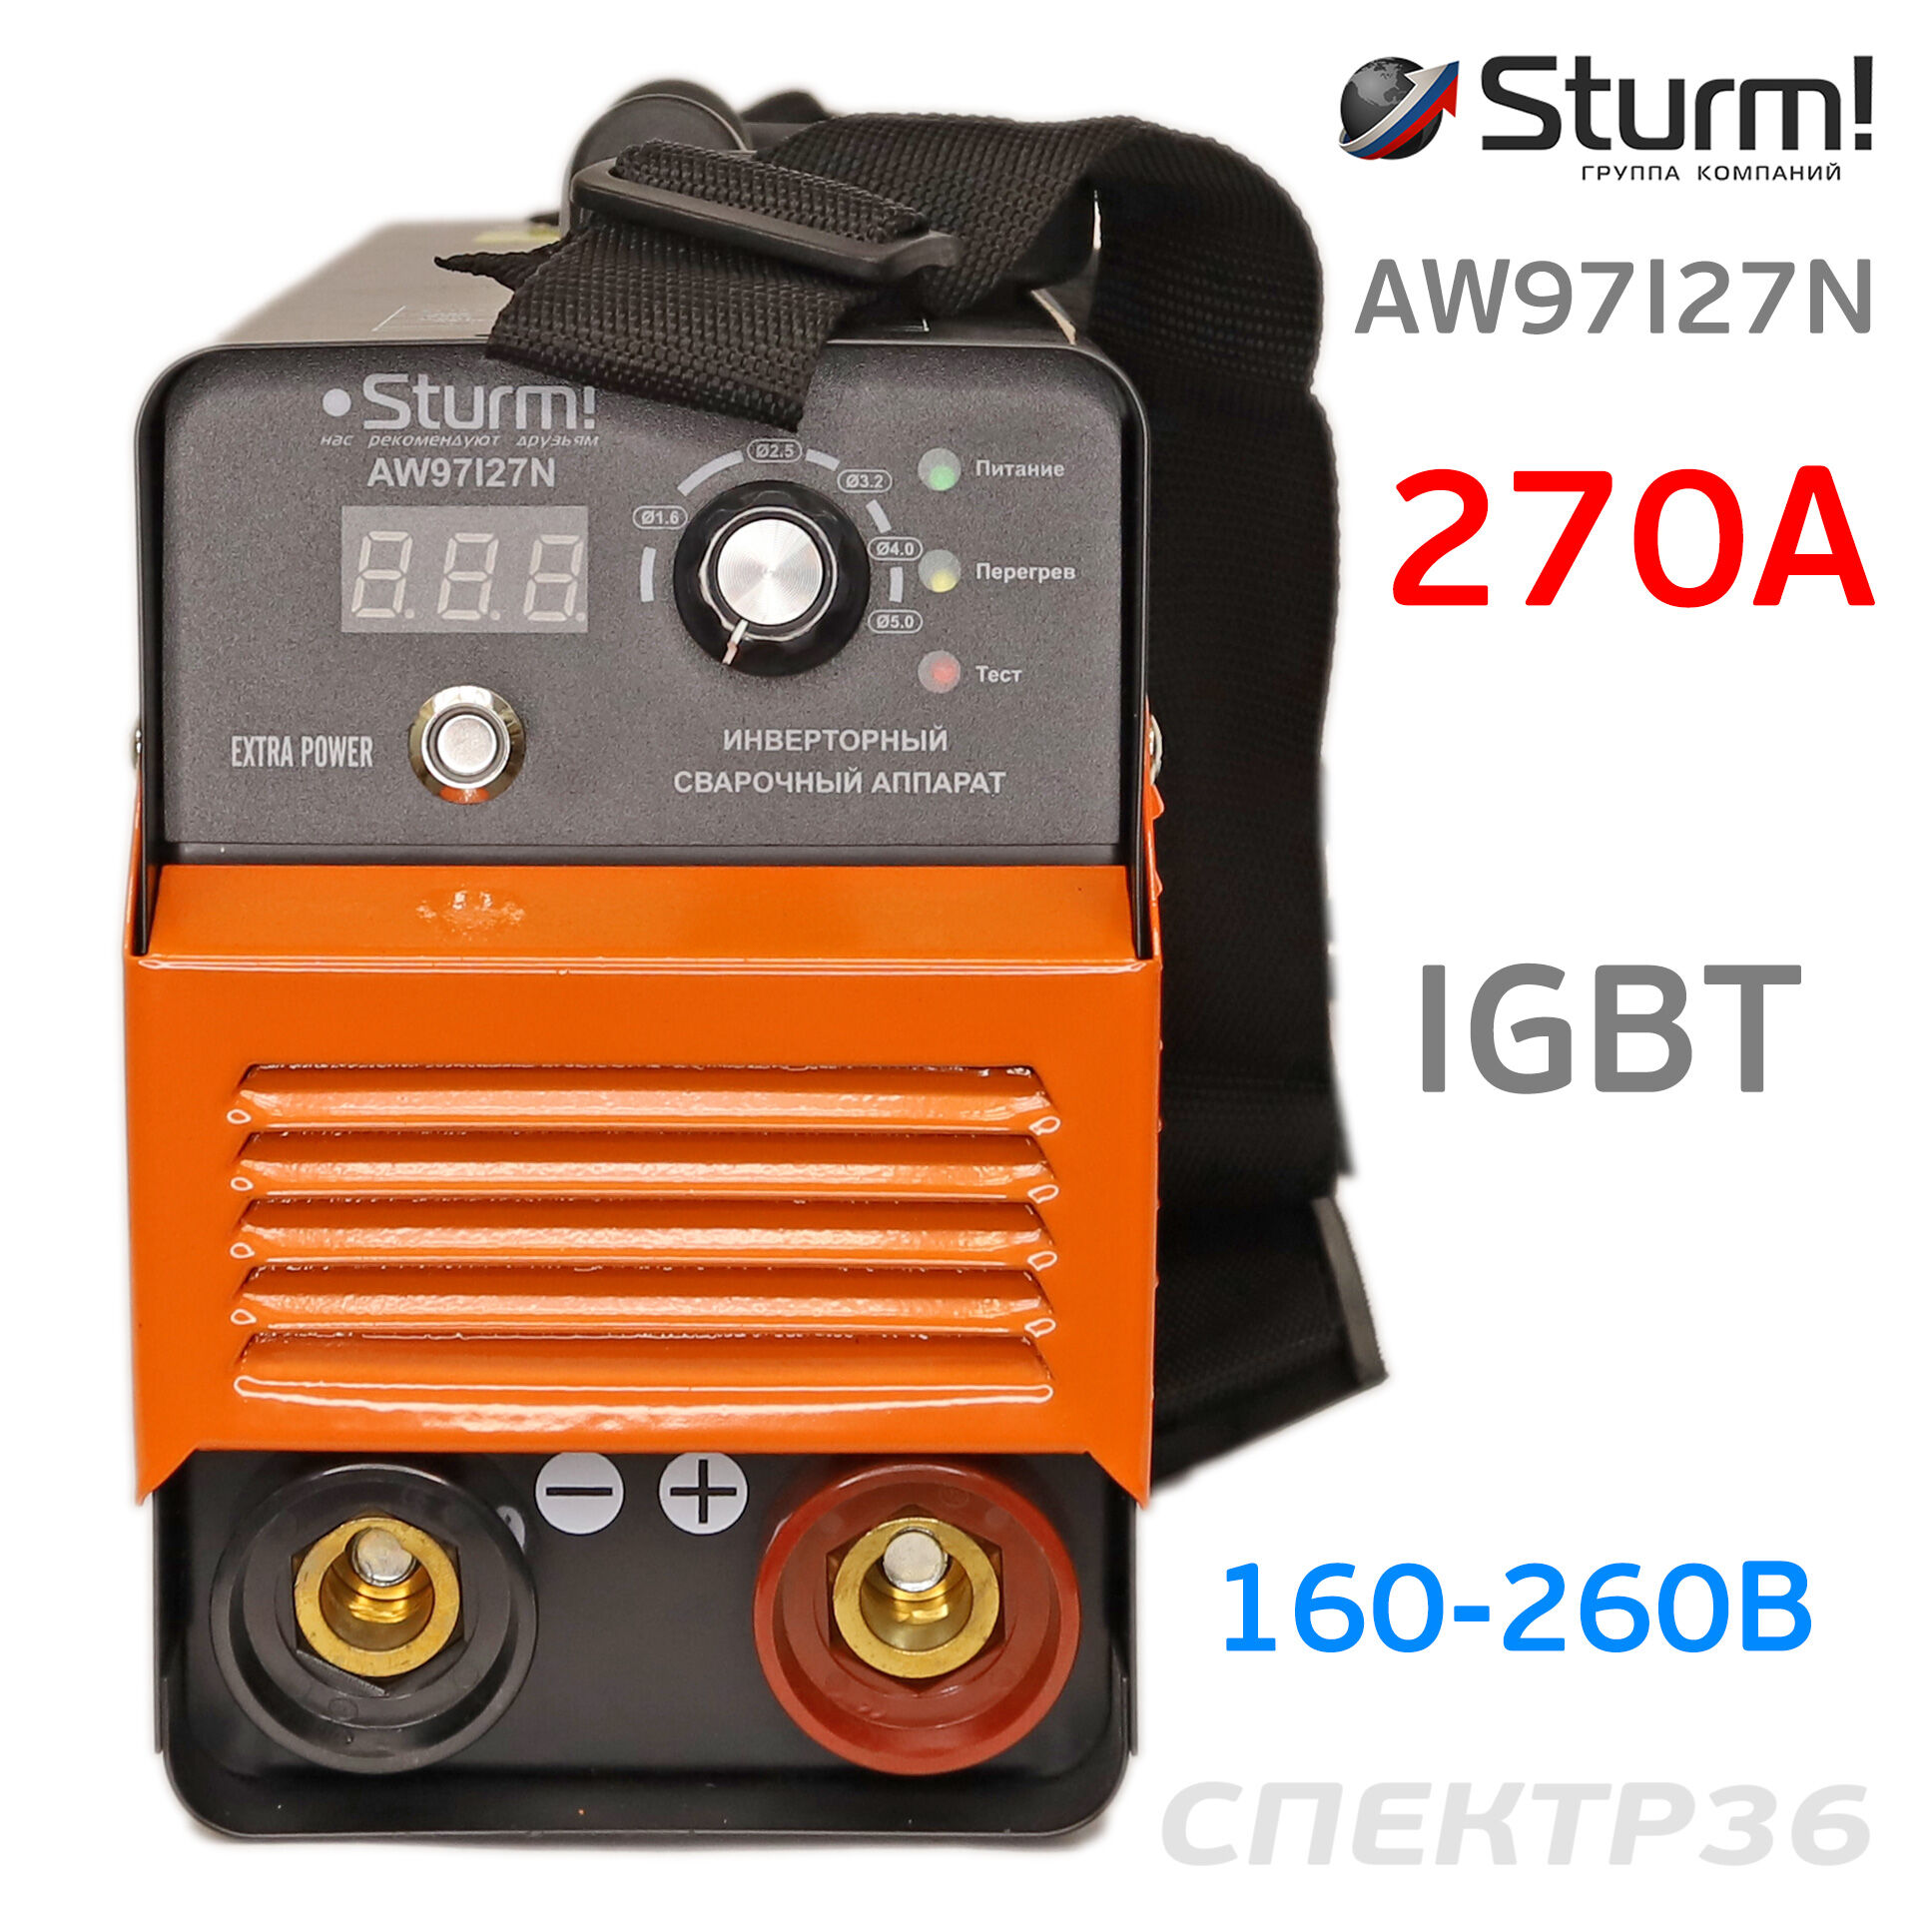 Инвертор Sturm AW97I27N (160-260В, 270 А) IGBT сварочный #2